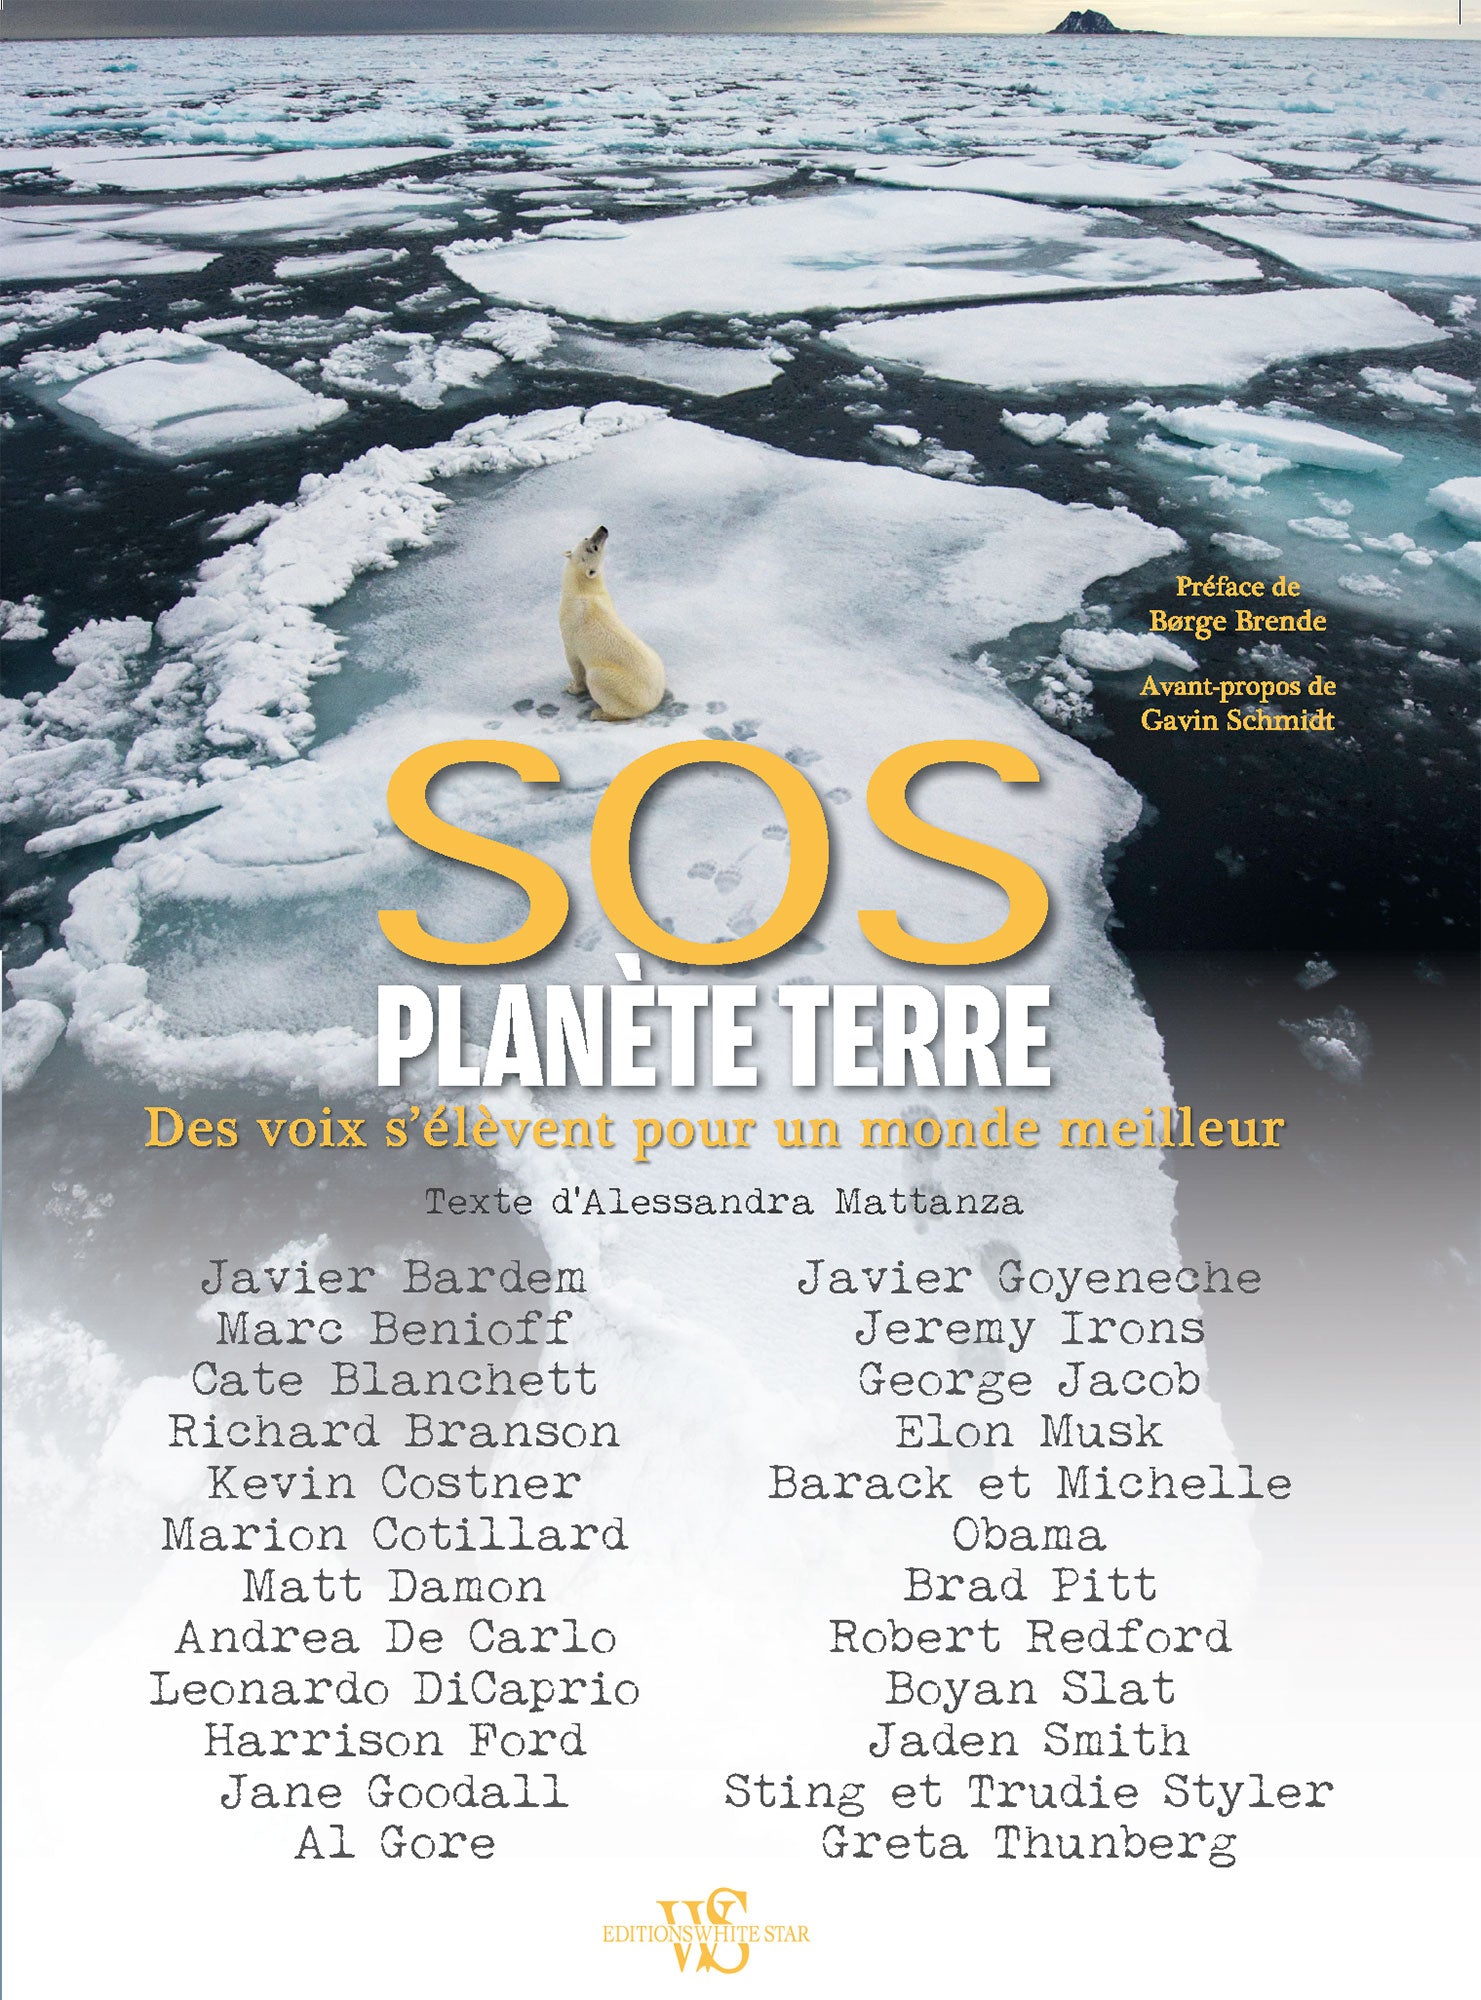 Alessandra Mattanza | BUY FROM AMAZON French Edition - SOS planète Terre - Des voix s'élèvent pour un monde meilleur Relié – Illustré.